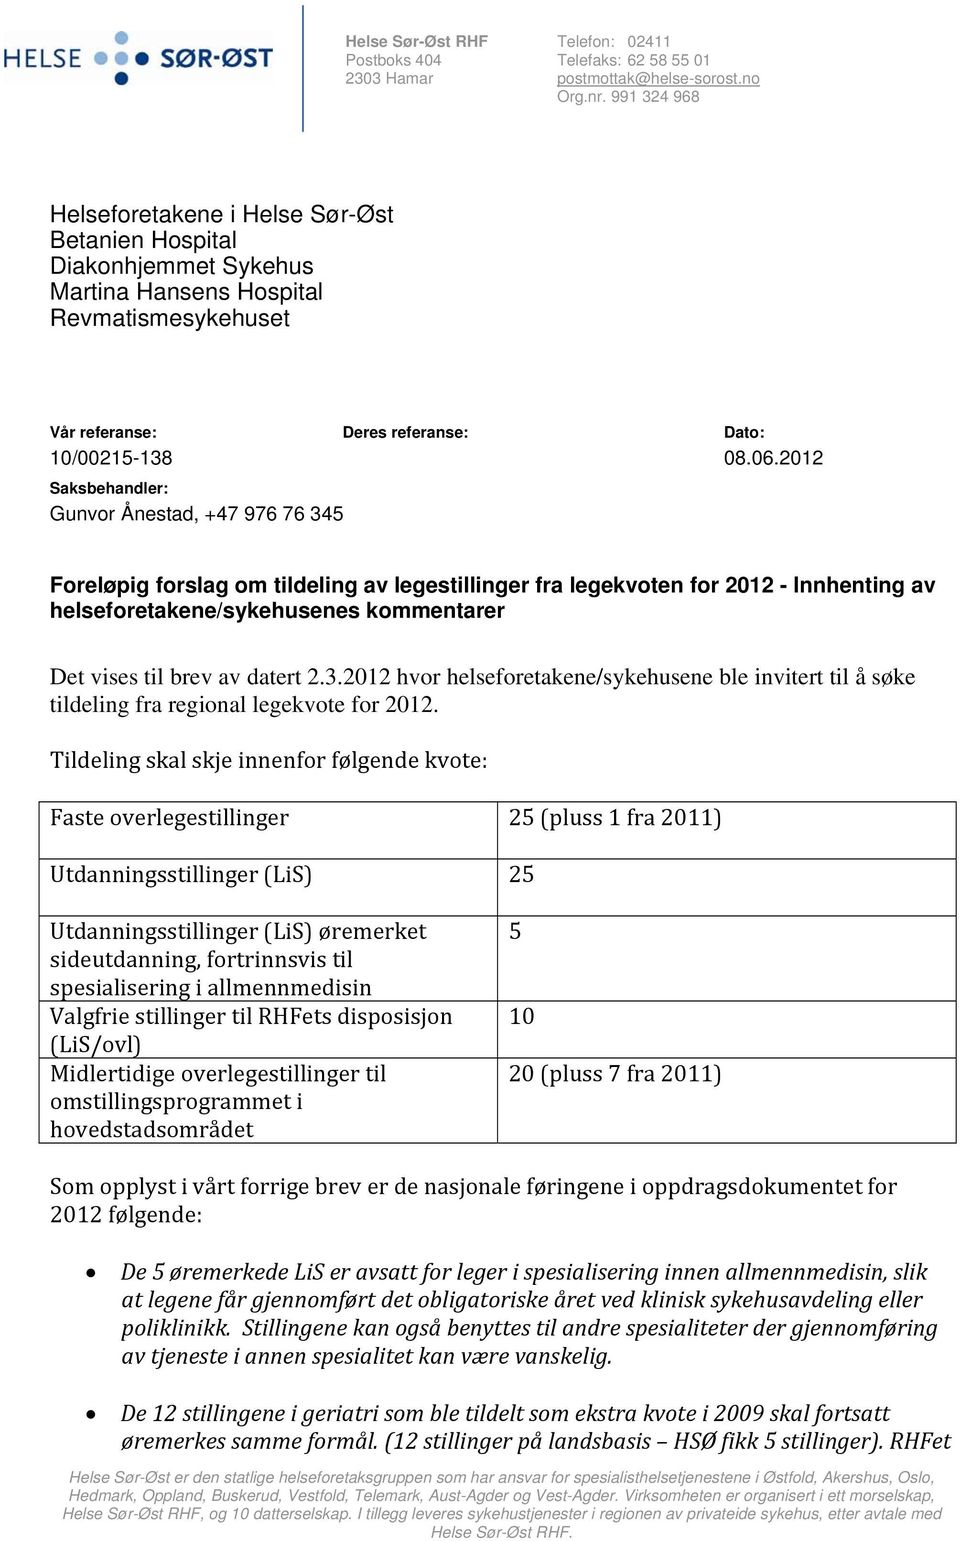 2012 Saksbehandler: Gunvor Ånestad, +47 976 76 345 Foreløpig forslag om tildeling av legestillinger fra legekvoten for 2012 - Innhenting av helseforetakene/sykehusenes kommentarer Det vises til brev